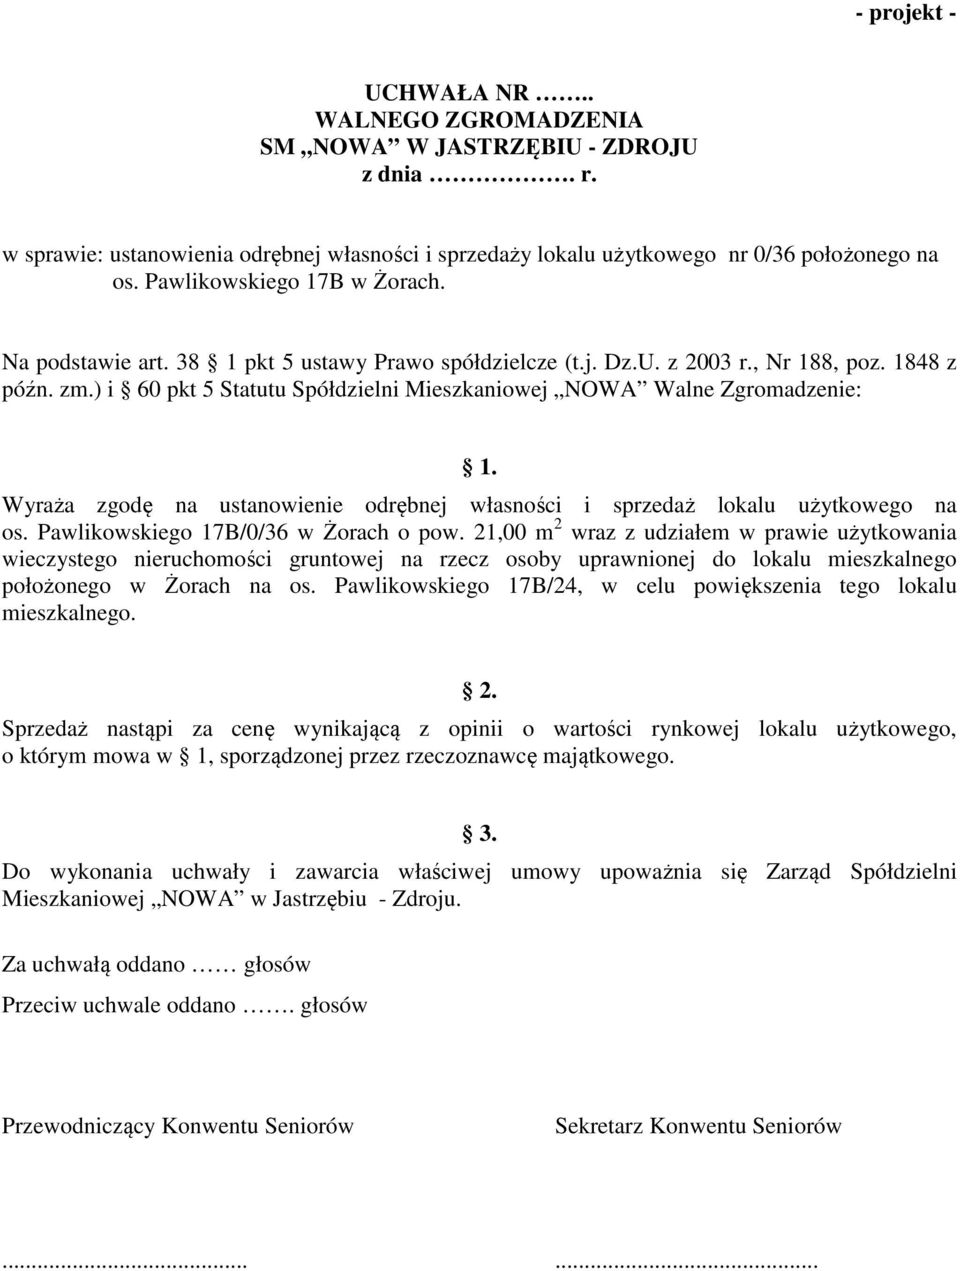 Wyraża zgodę na ustanowienie odrębnej własności i sprzedaż lokalu użytkowego na os. Pawlikowskiego 17B/0/36 w Żorach o pow.